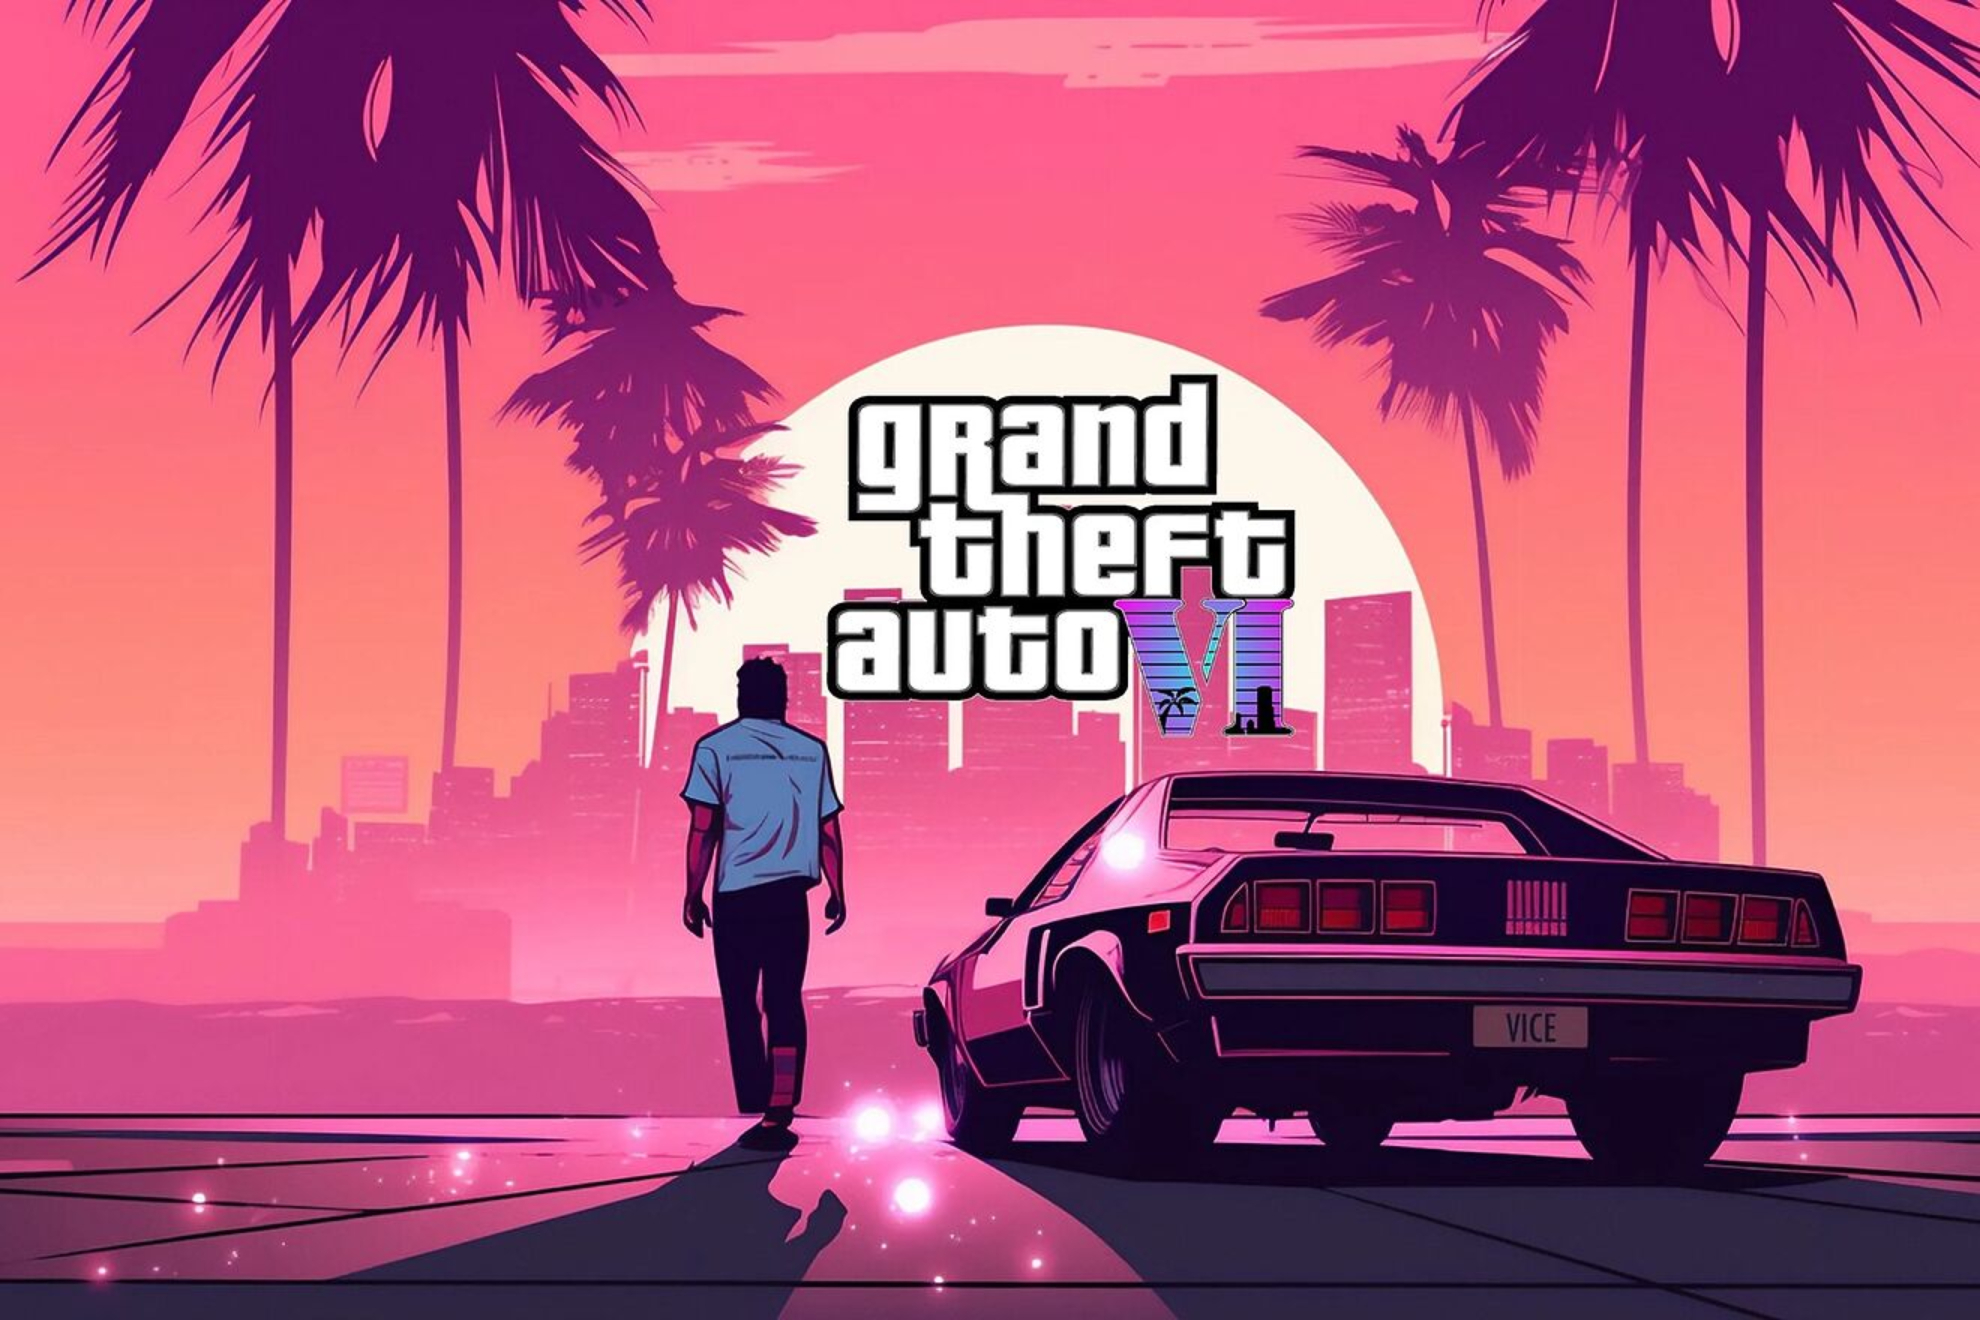 Cuándo sale el tráiler de GTA 6 en España, hora y dónde ver online el nuevo Grand Theft Auto